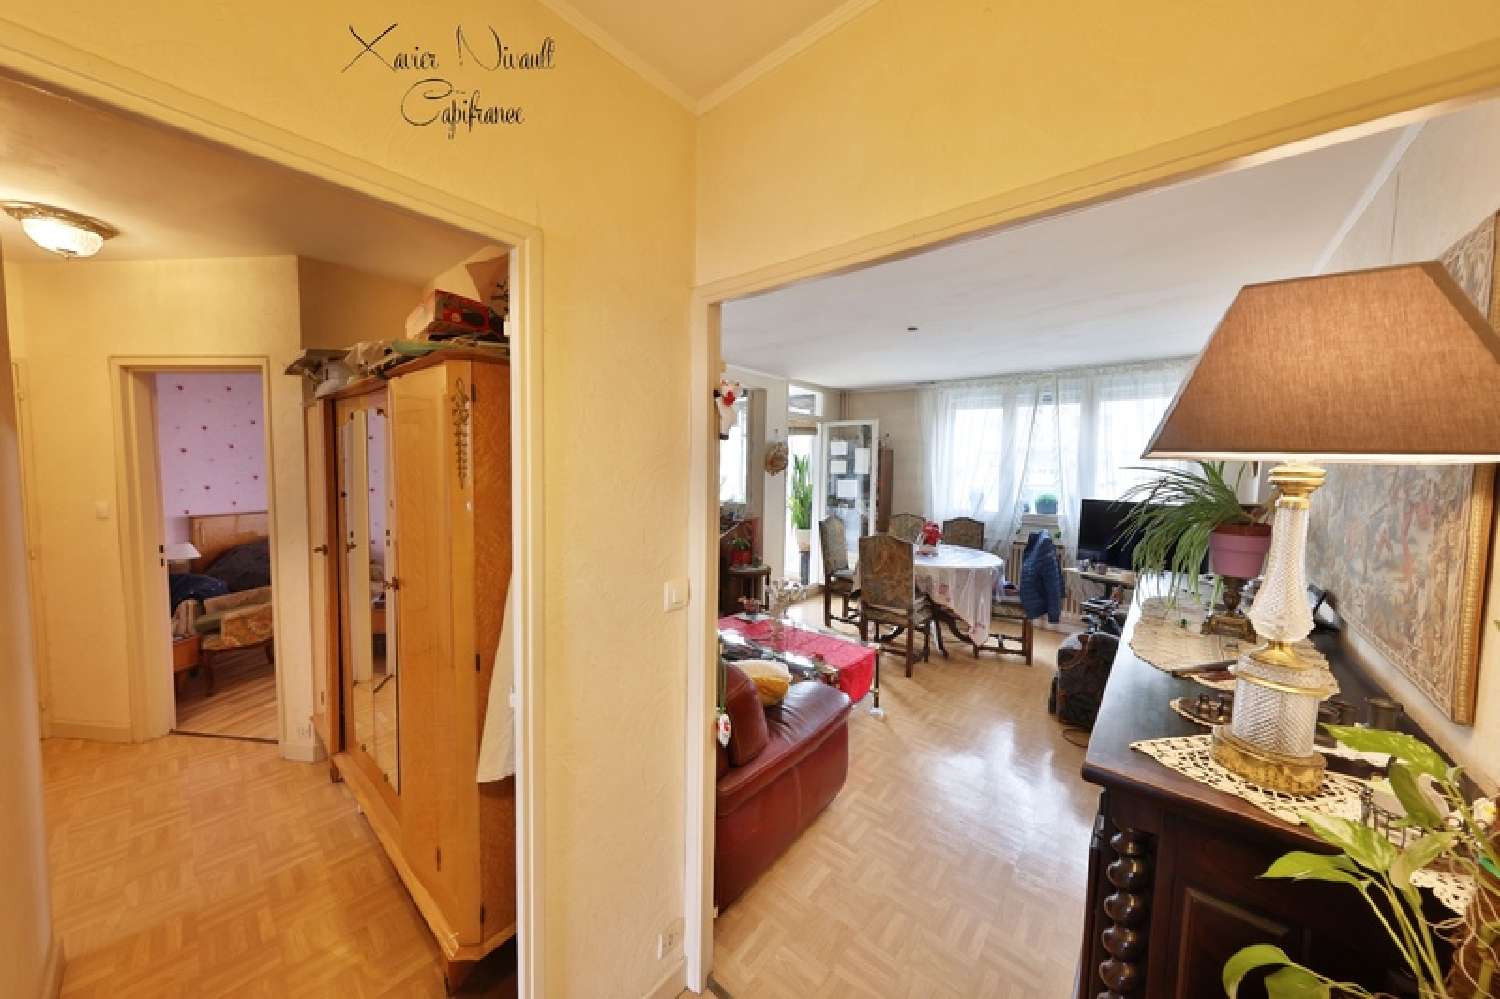  à vendre appartement Loché Saône-et-Loire 4